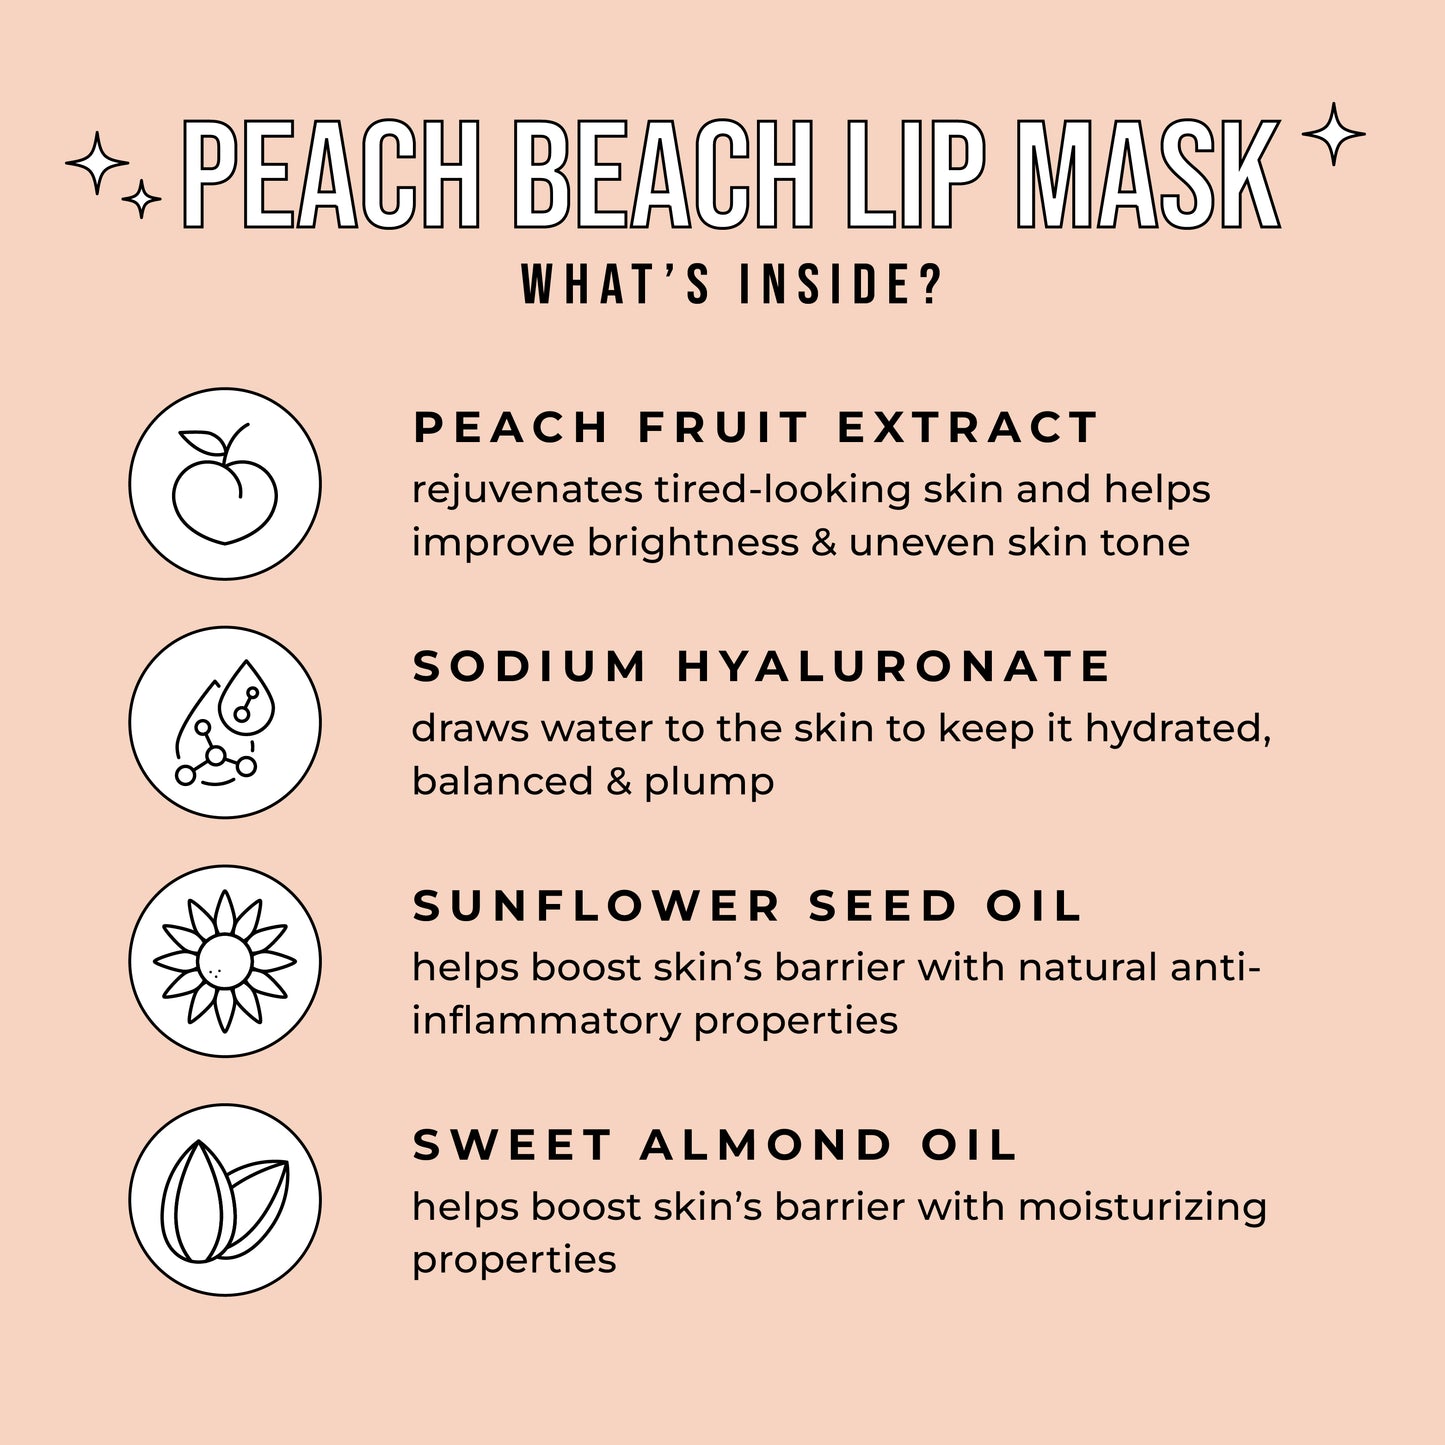 Peach Beach Lip Mask